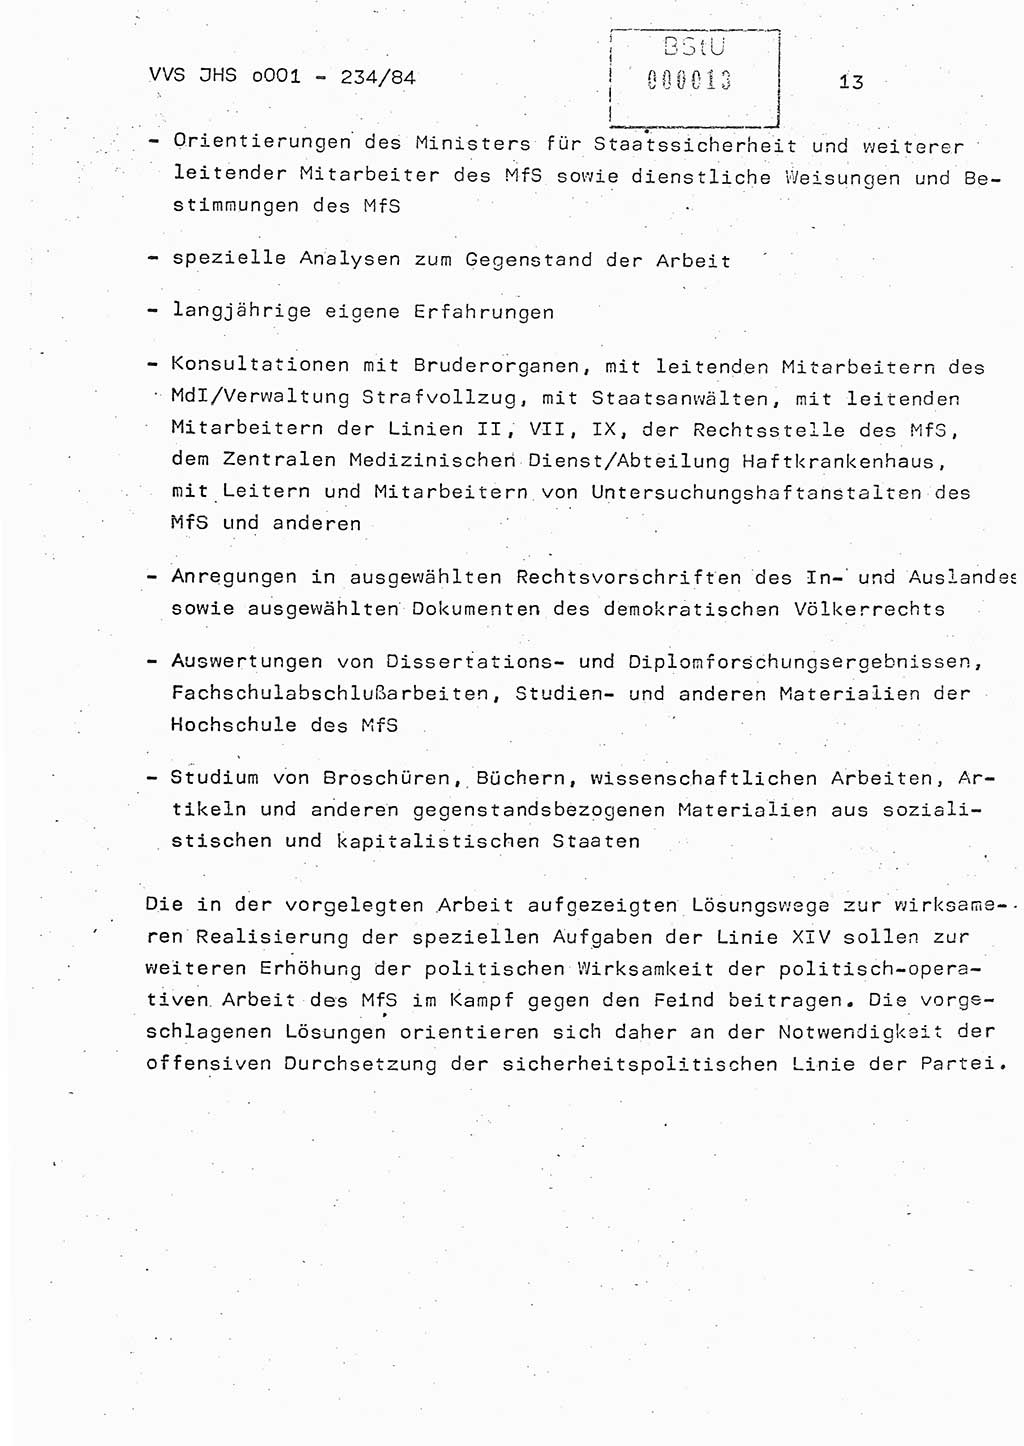 Dissertation Oberst Siegfried Rataizick (Abt. ⅩⅣ), Oberstleutnant Volkmar Heinz (Abt. ⅩⅣ), Oberstleutnant Werner Stein (HA Ⅸ), Hauptmann Heinz Conrad (JHS), Ministerium für Staatssicherheit (MfS) [Deutsche Demokratische Republik (DDR)], Juristische Hochschule (JHS), Vertrauliche Verschlußsache (VVS) o001-234/84, Potsdam 1984, Seite 13 (Diss. MfS DDR JHS VVS o001-234/84 1984, S. 13)